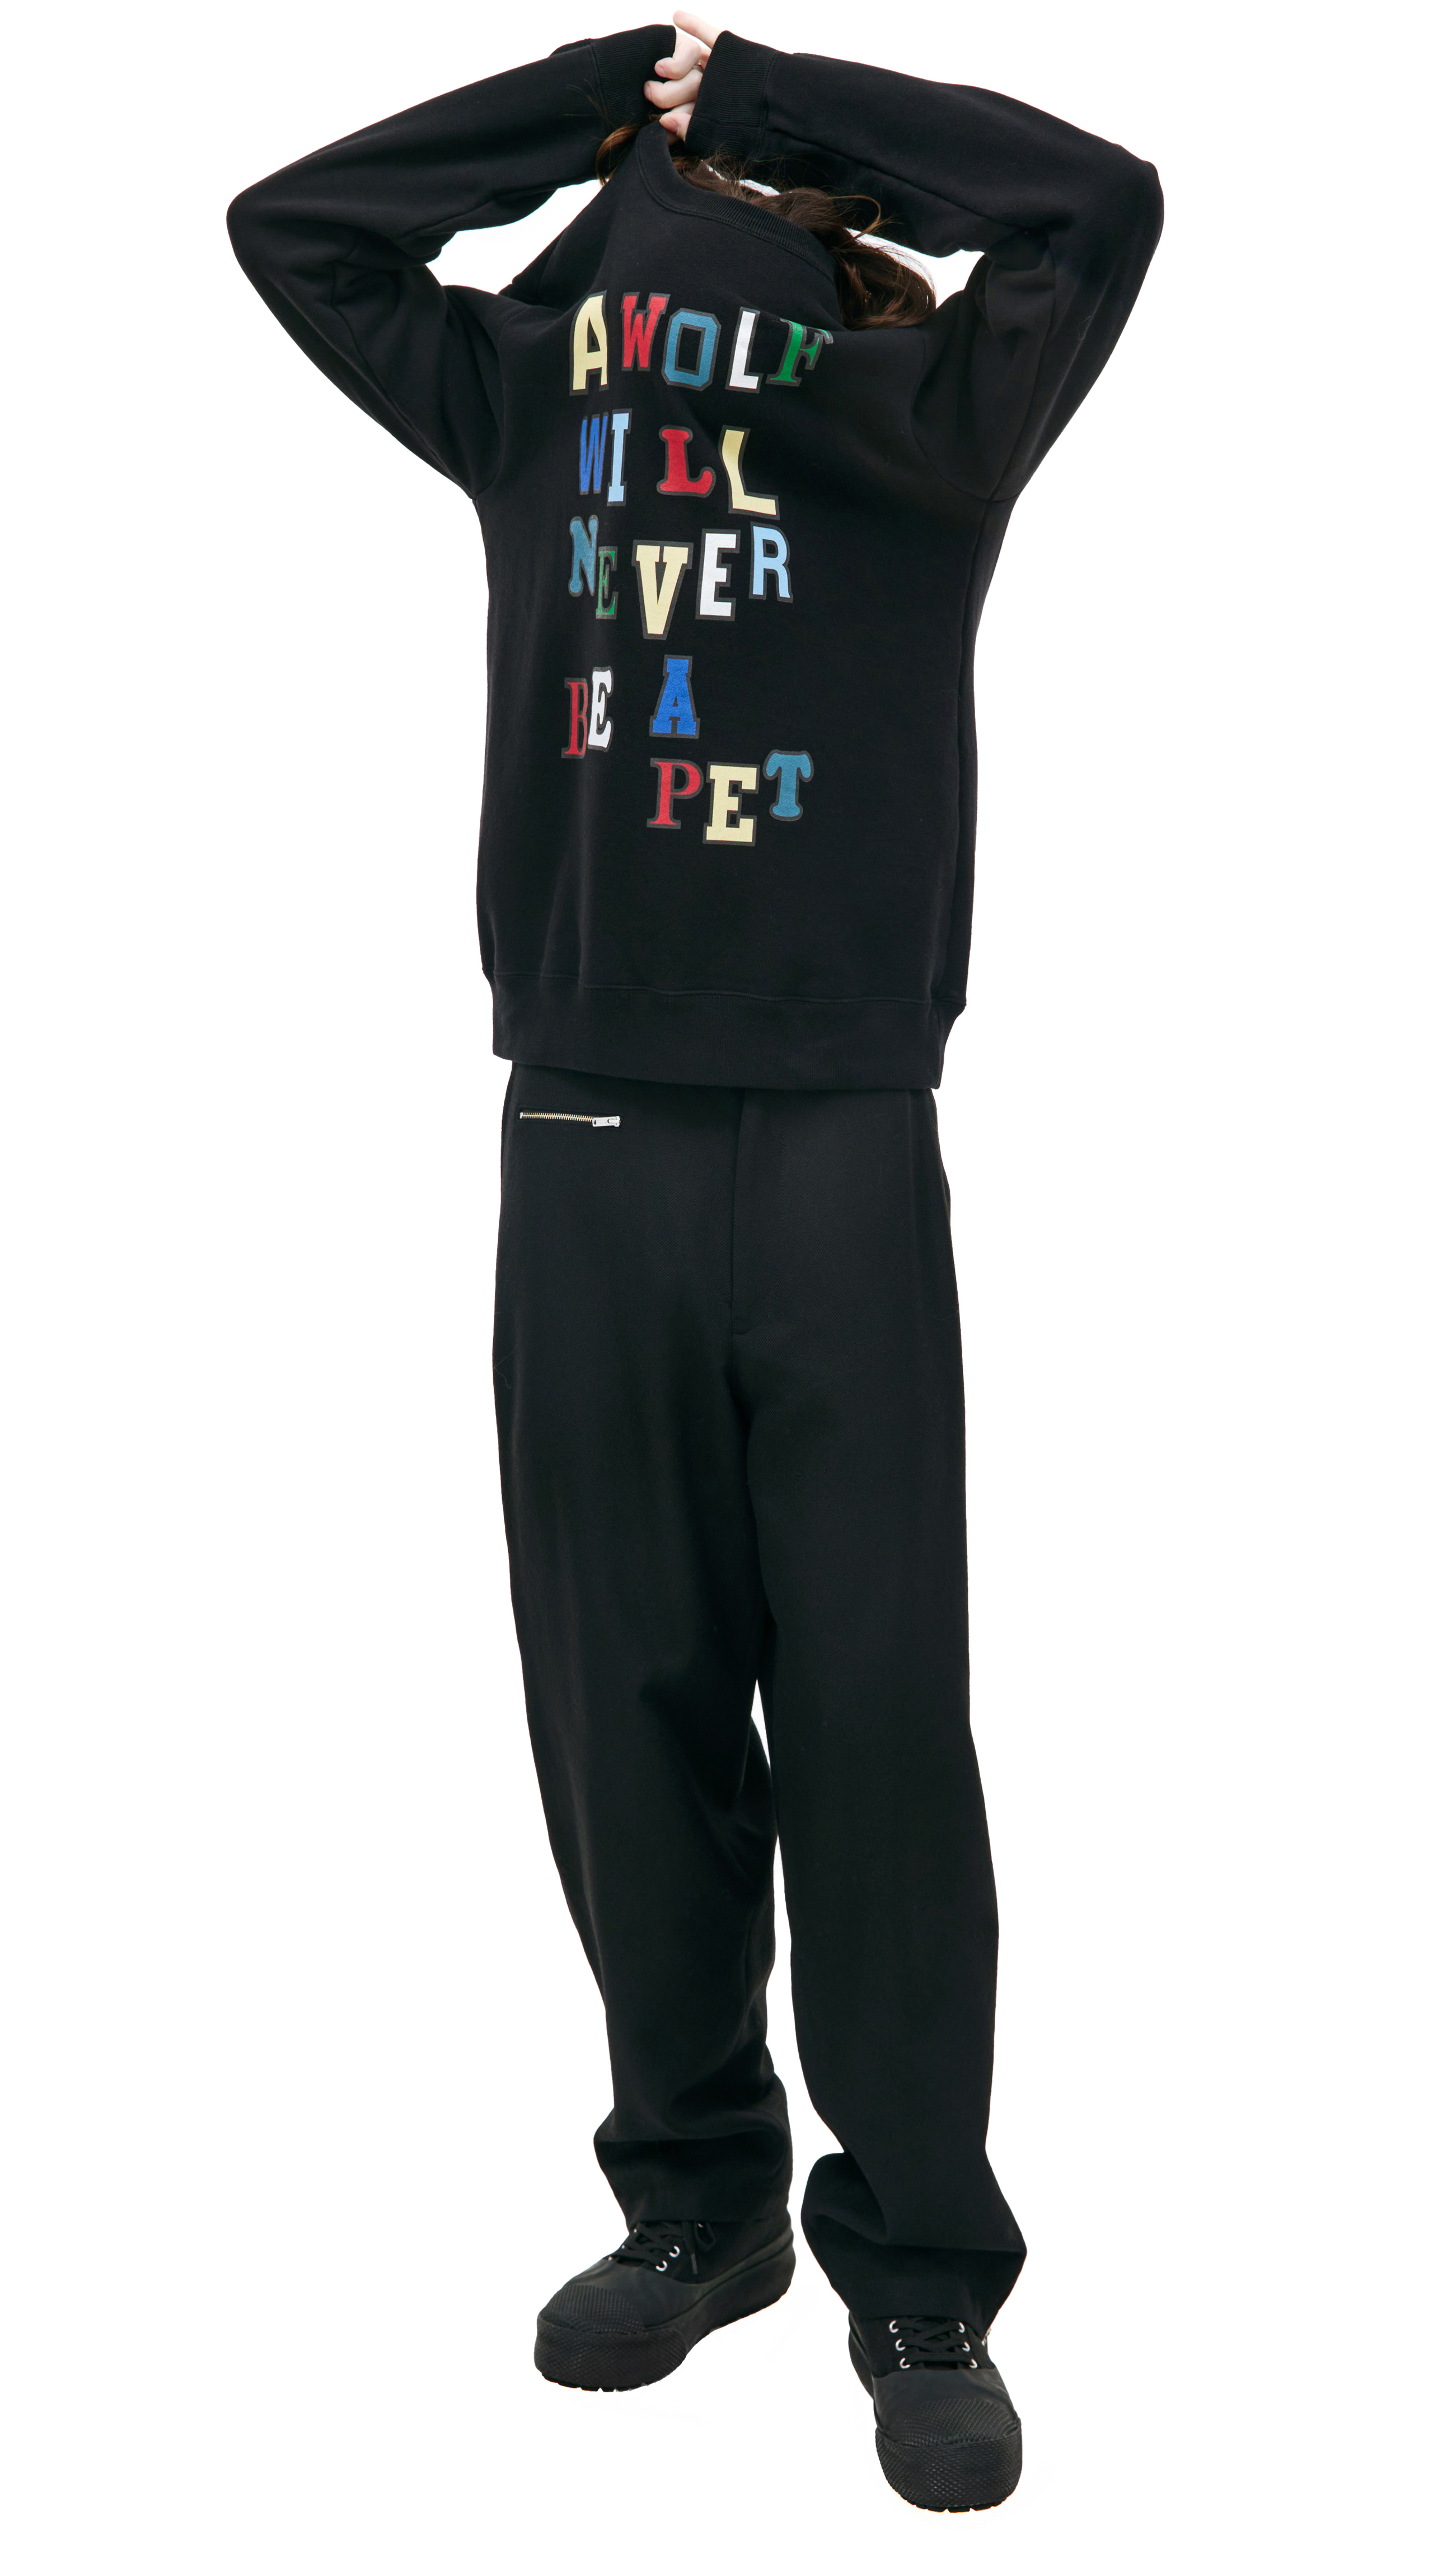 Buy Undercover men black appliqué sweatshirt for $395 online on